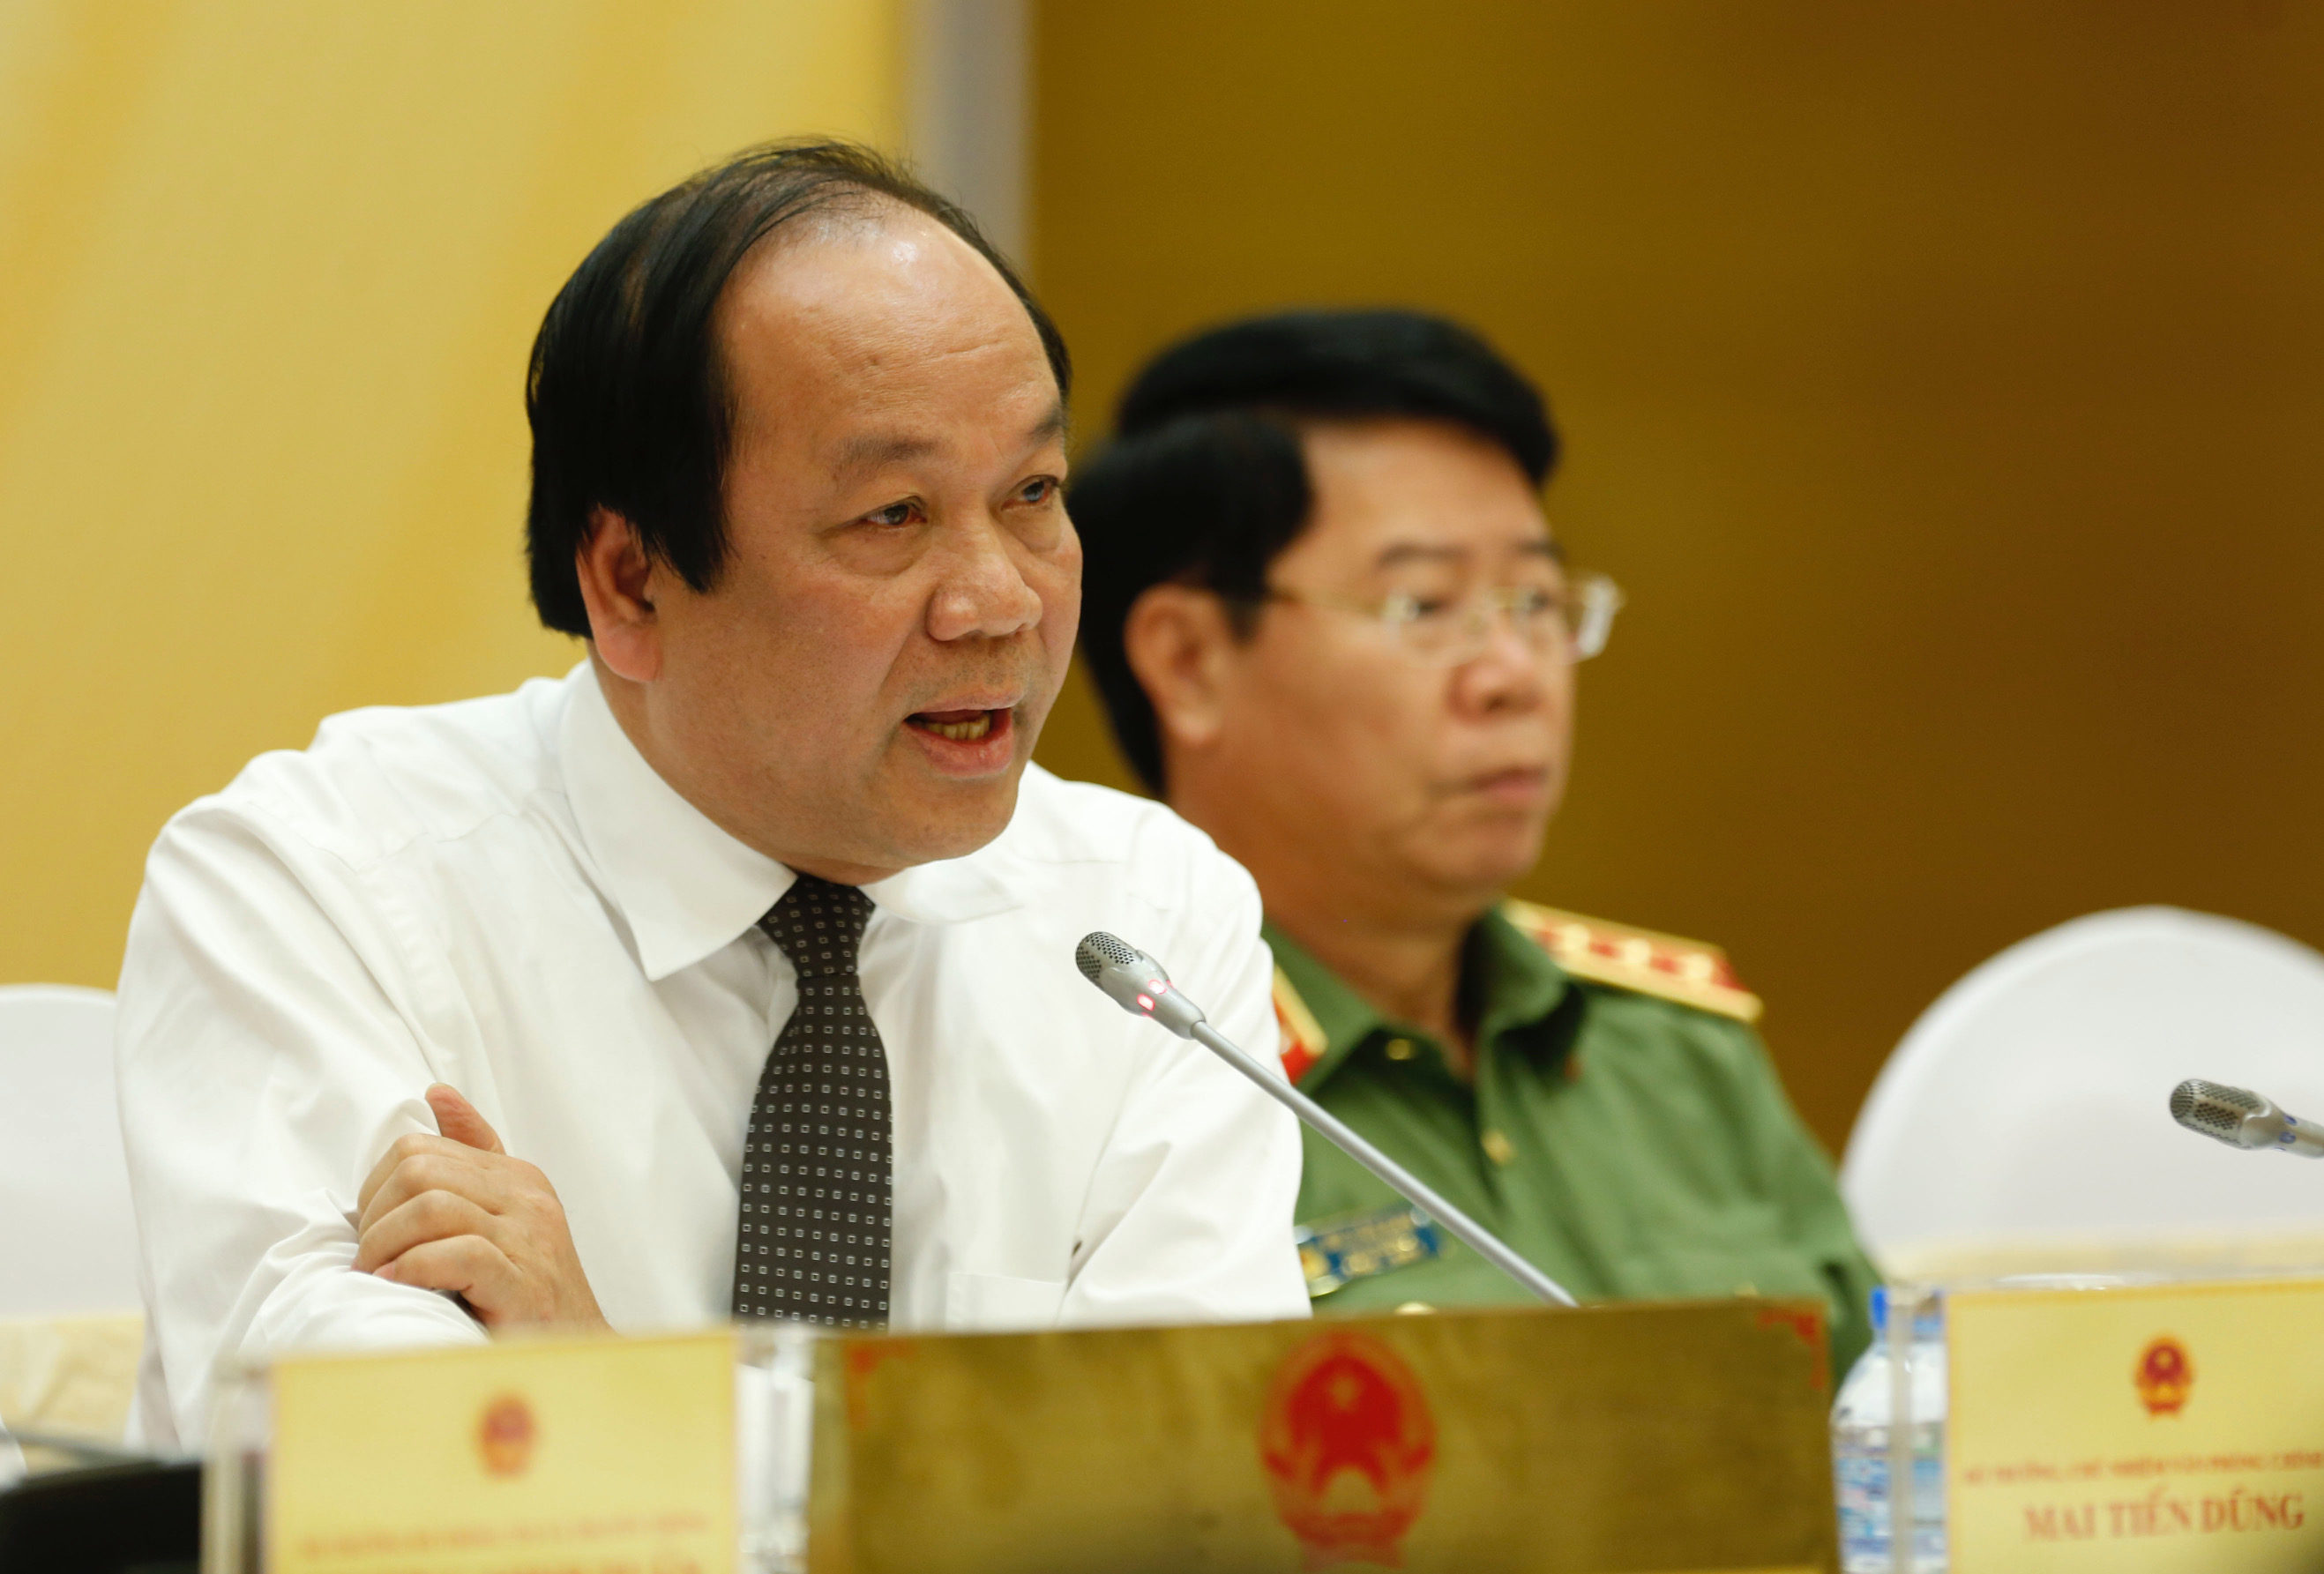 Mai Tiến Dũng, Vietnam government spokesman